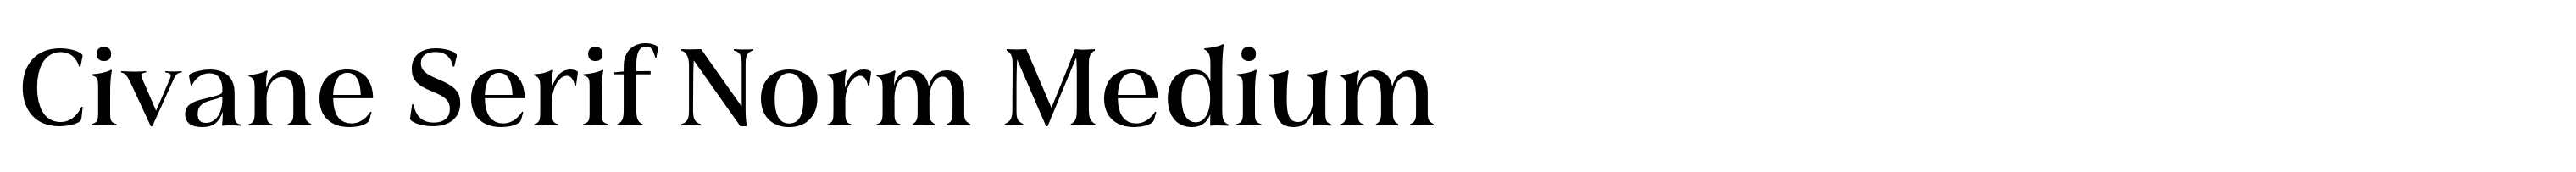 Civane Serif Norm Medium